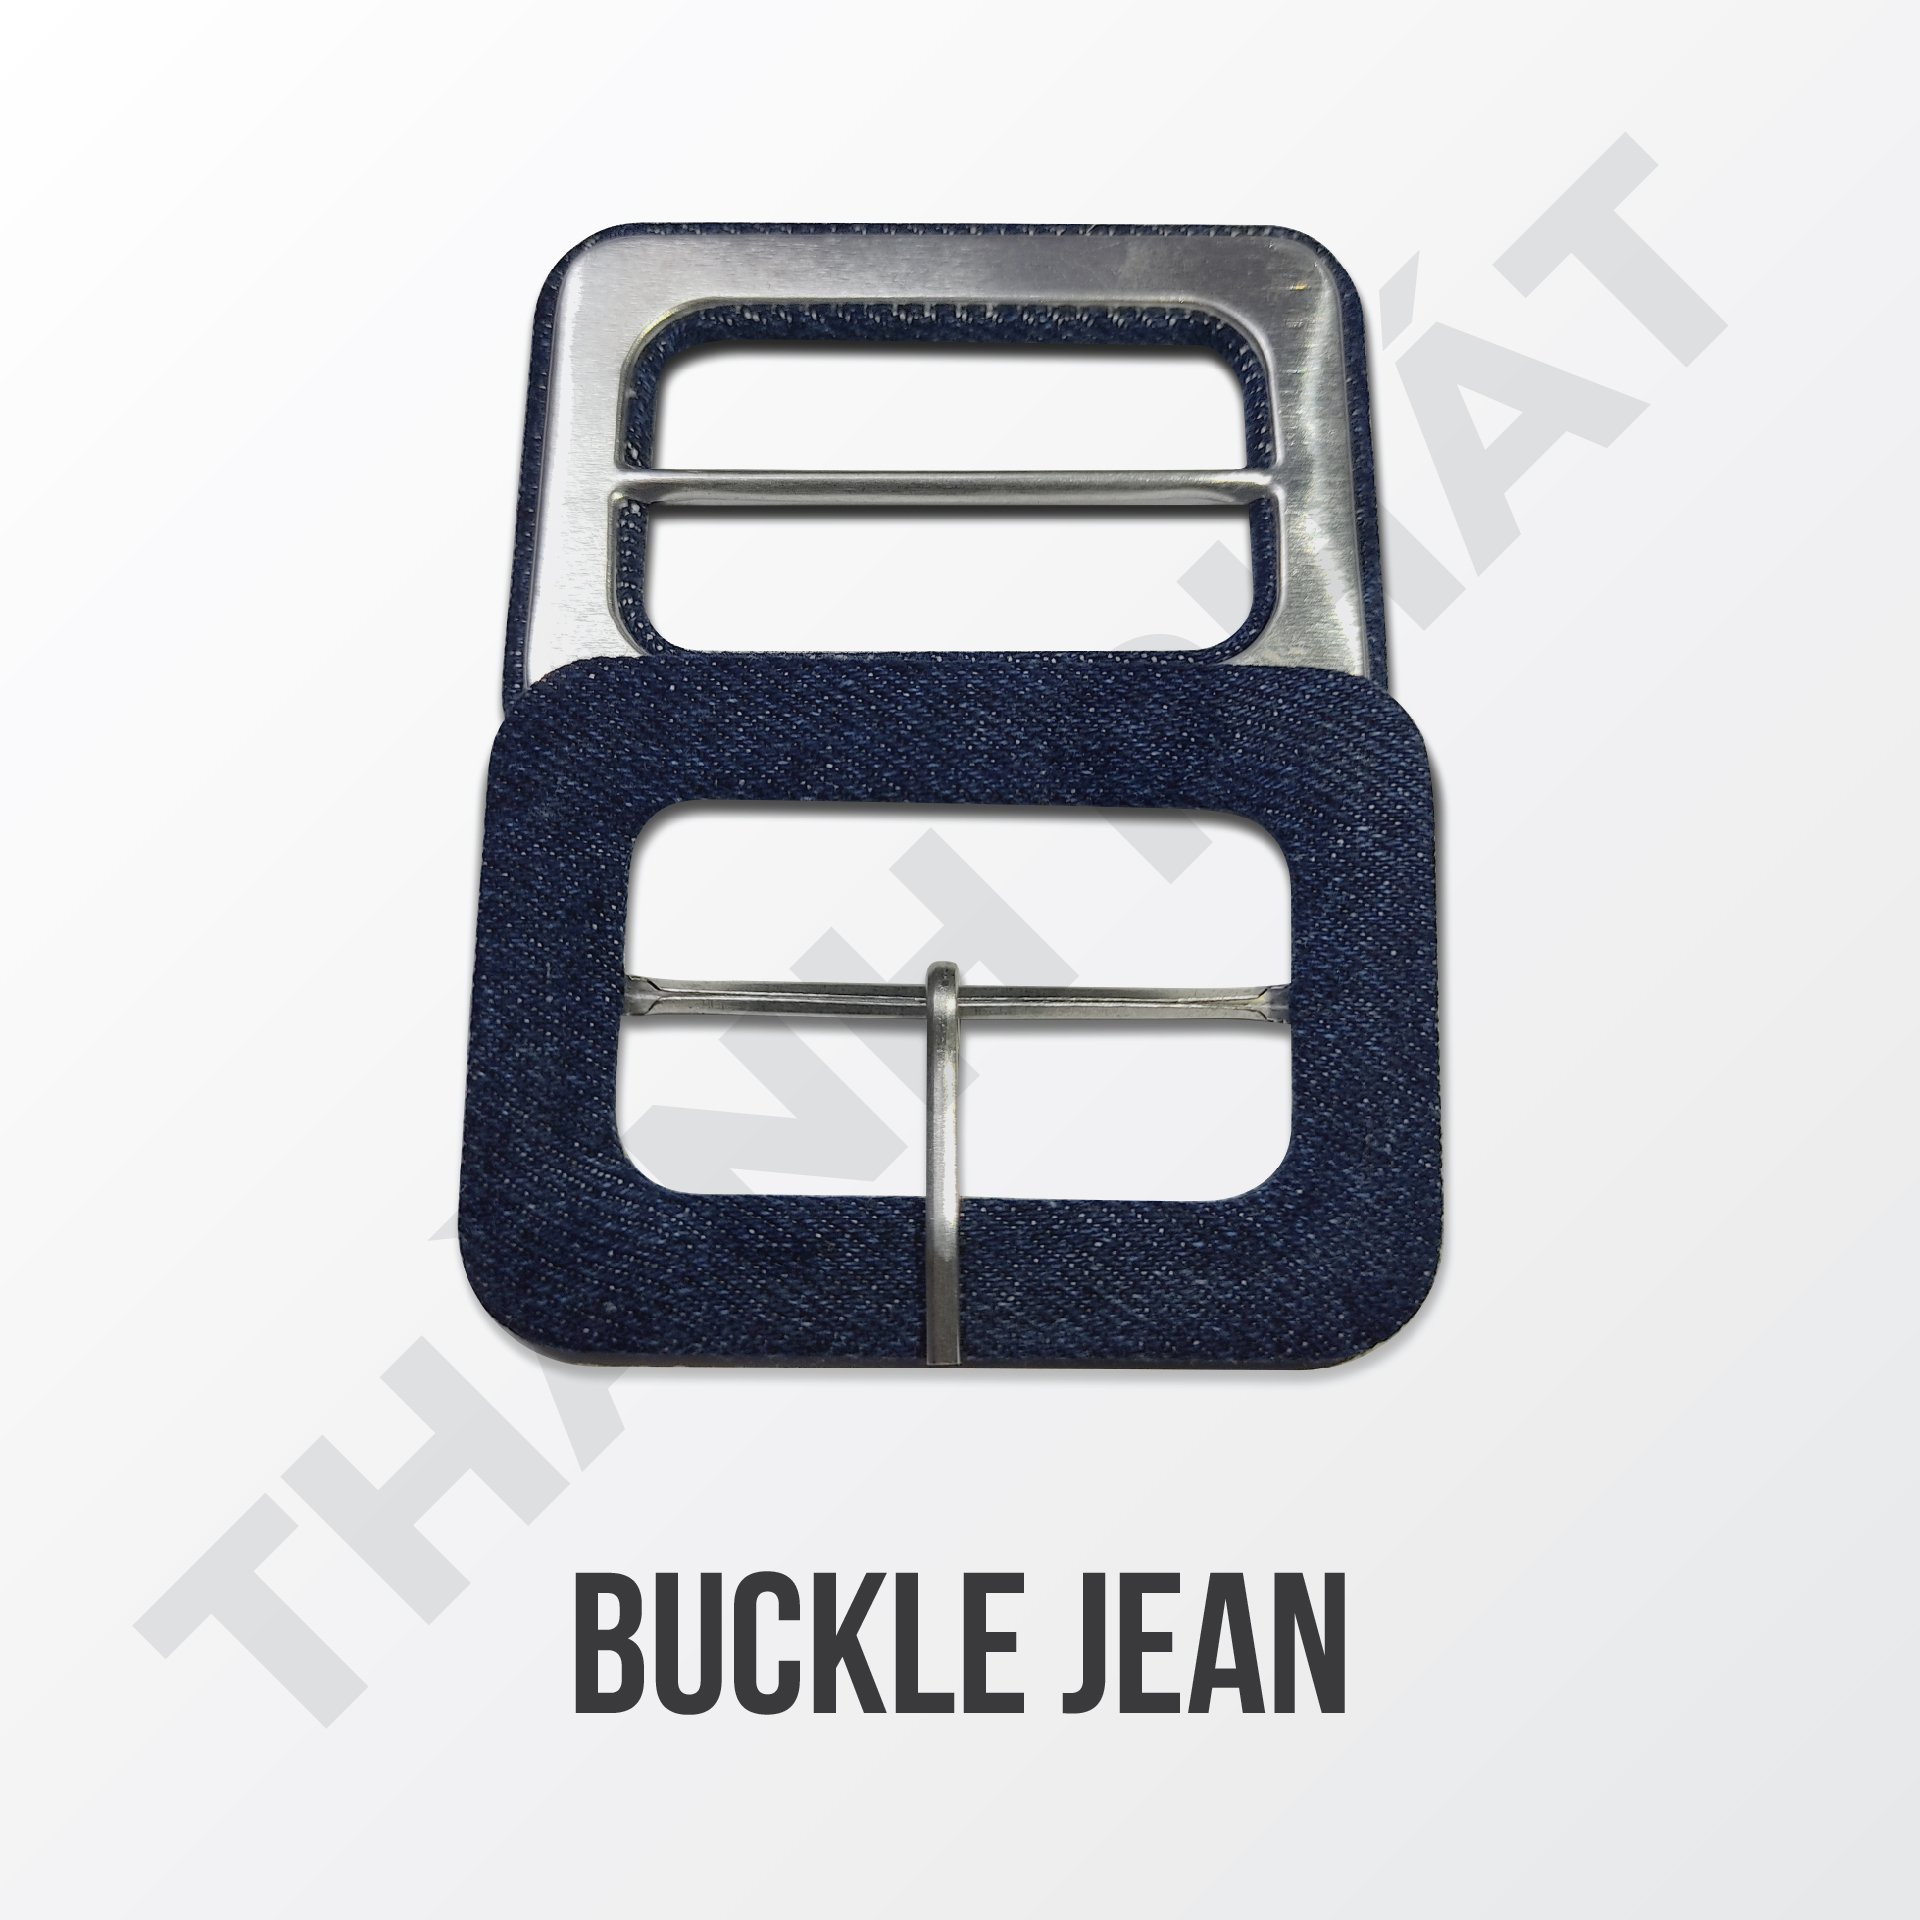 Buckle Jean